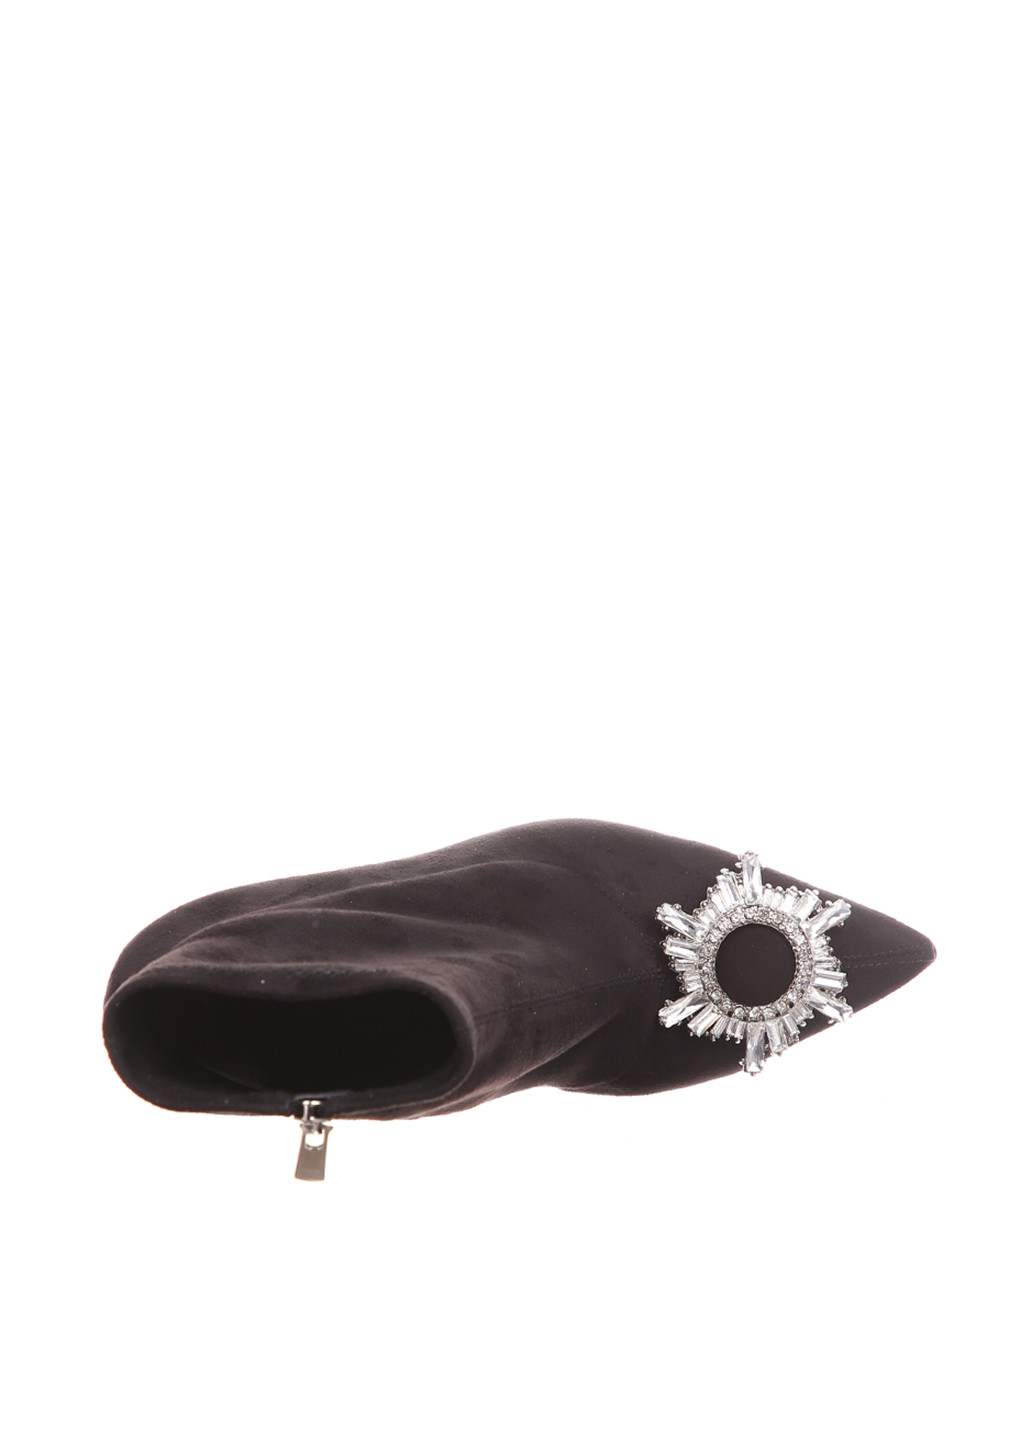 Осенние ботинки Lottini с брошкой из натуральной замши